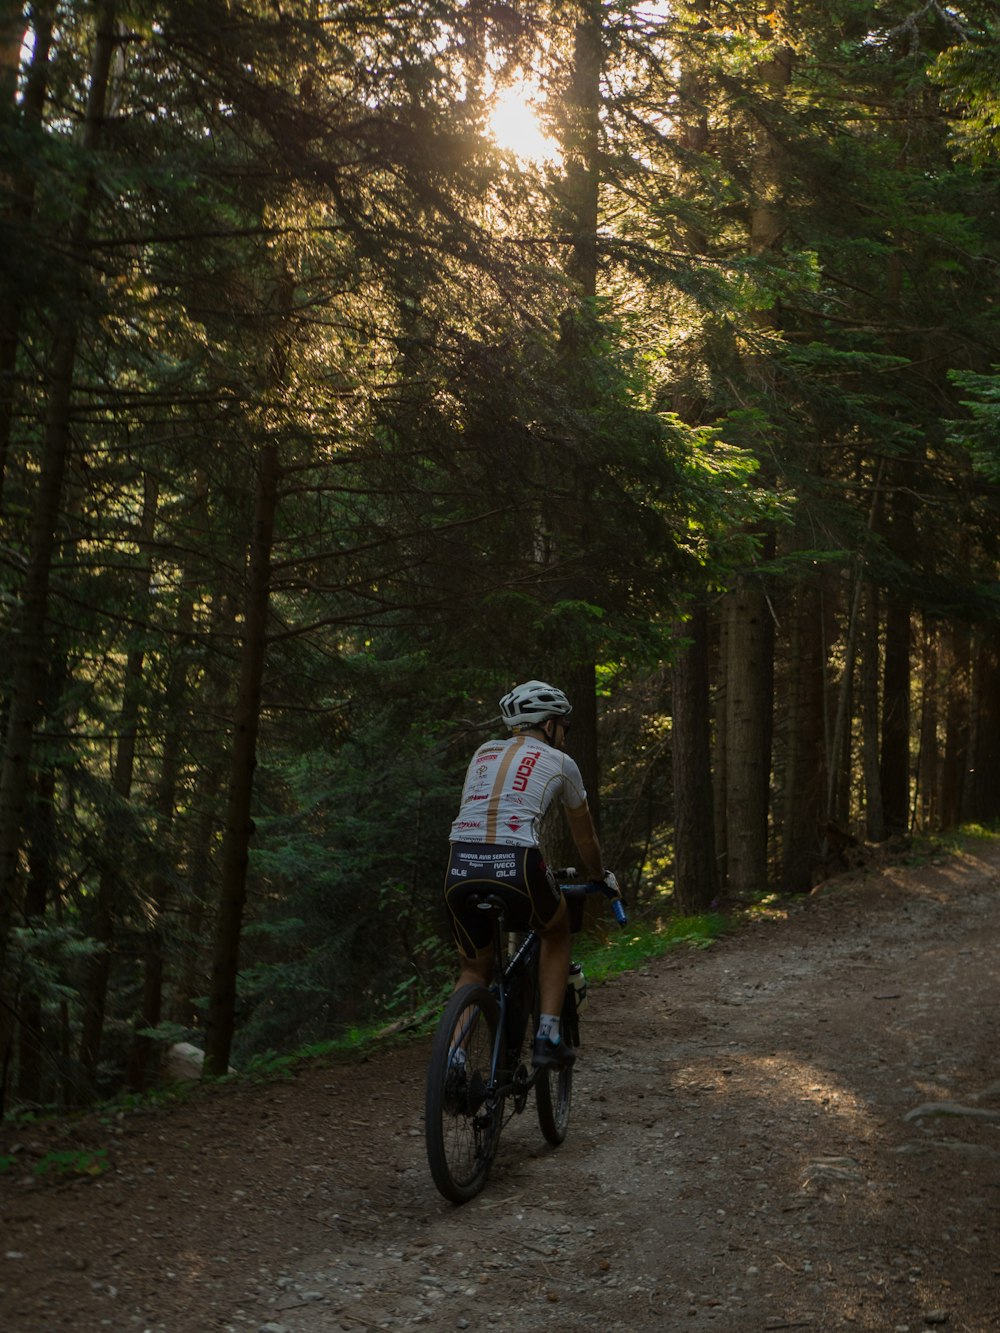 homem no capacete preto e branco que anda de bicicleta na floresta durante o dia